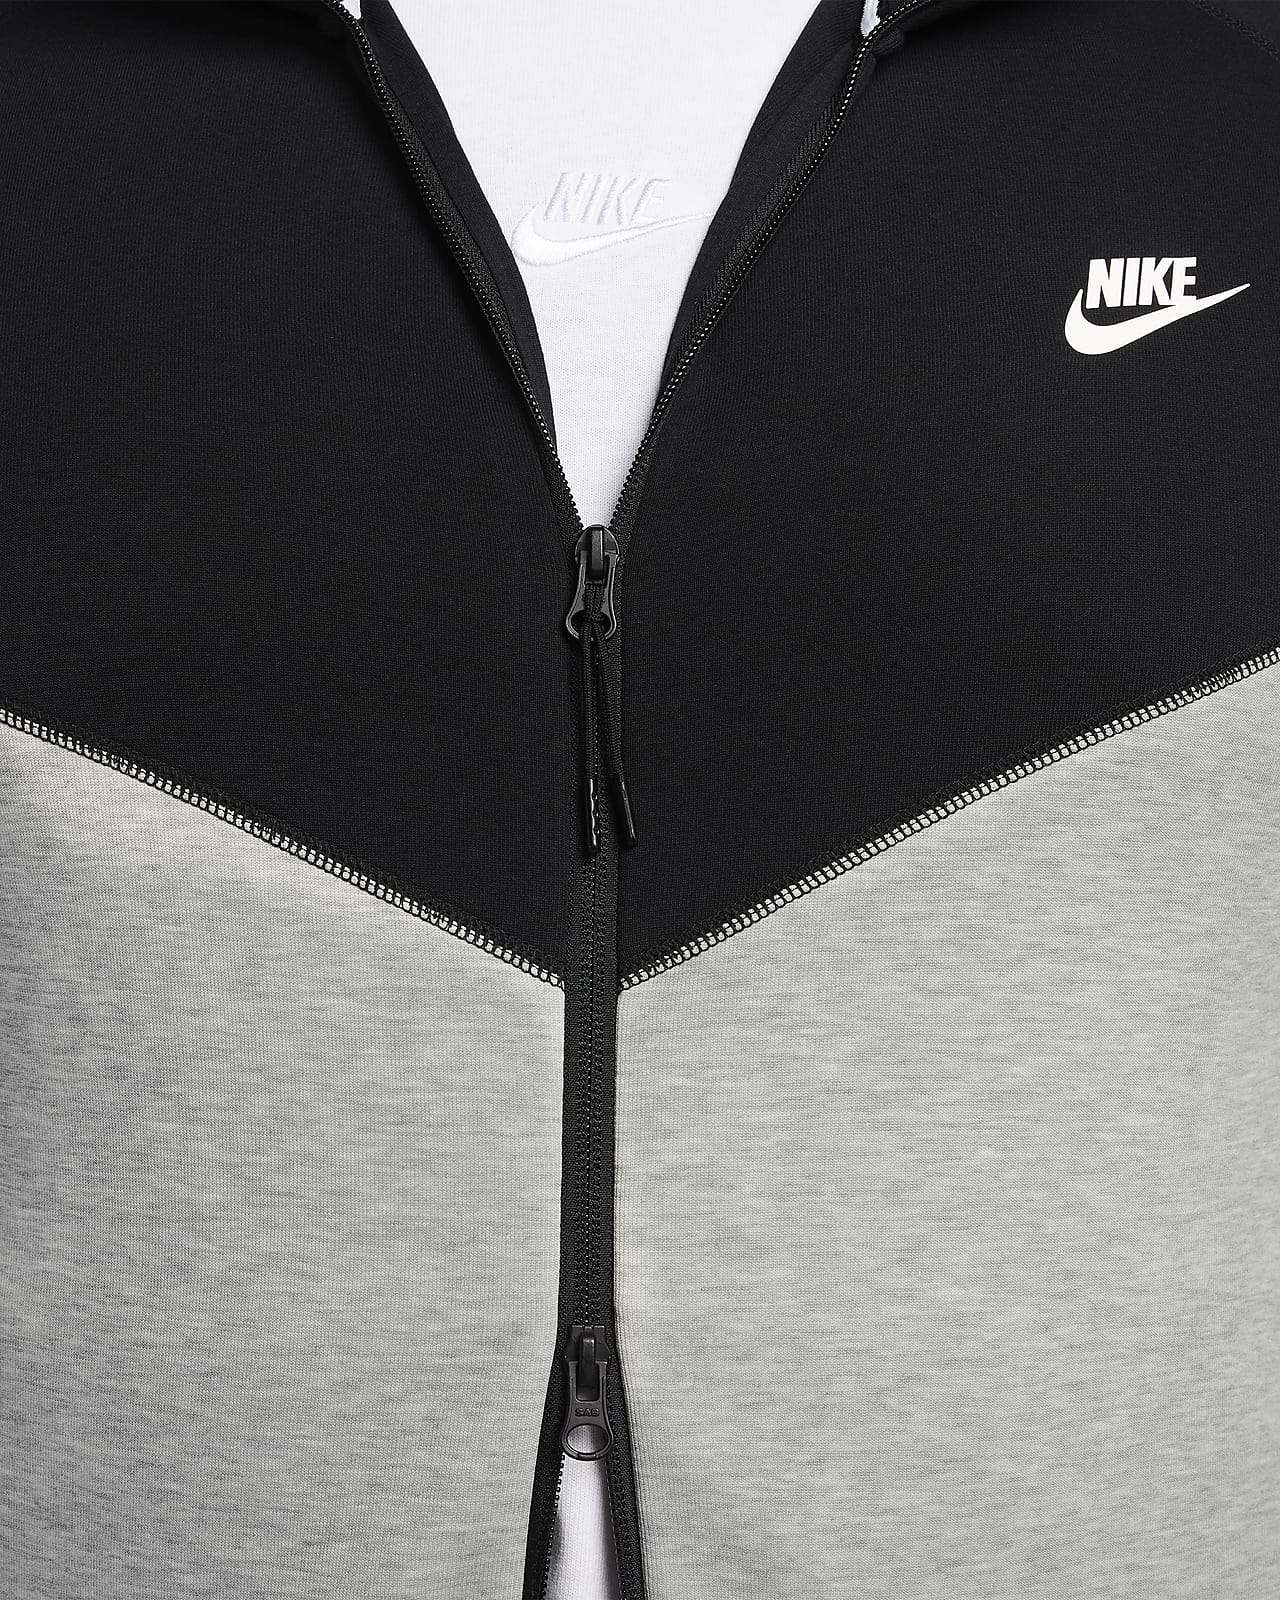 Casaco Nike Sportswear Tech Fleece Hoodie Grey Heather-Black-White